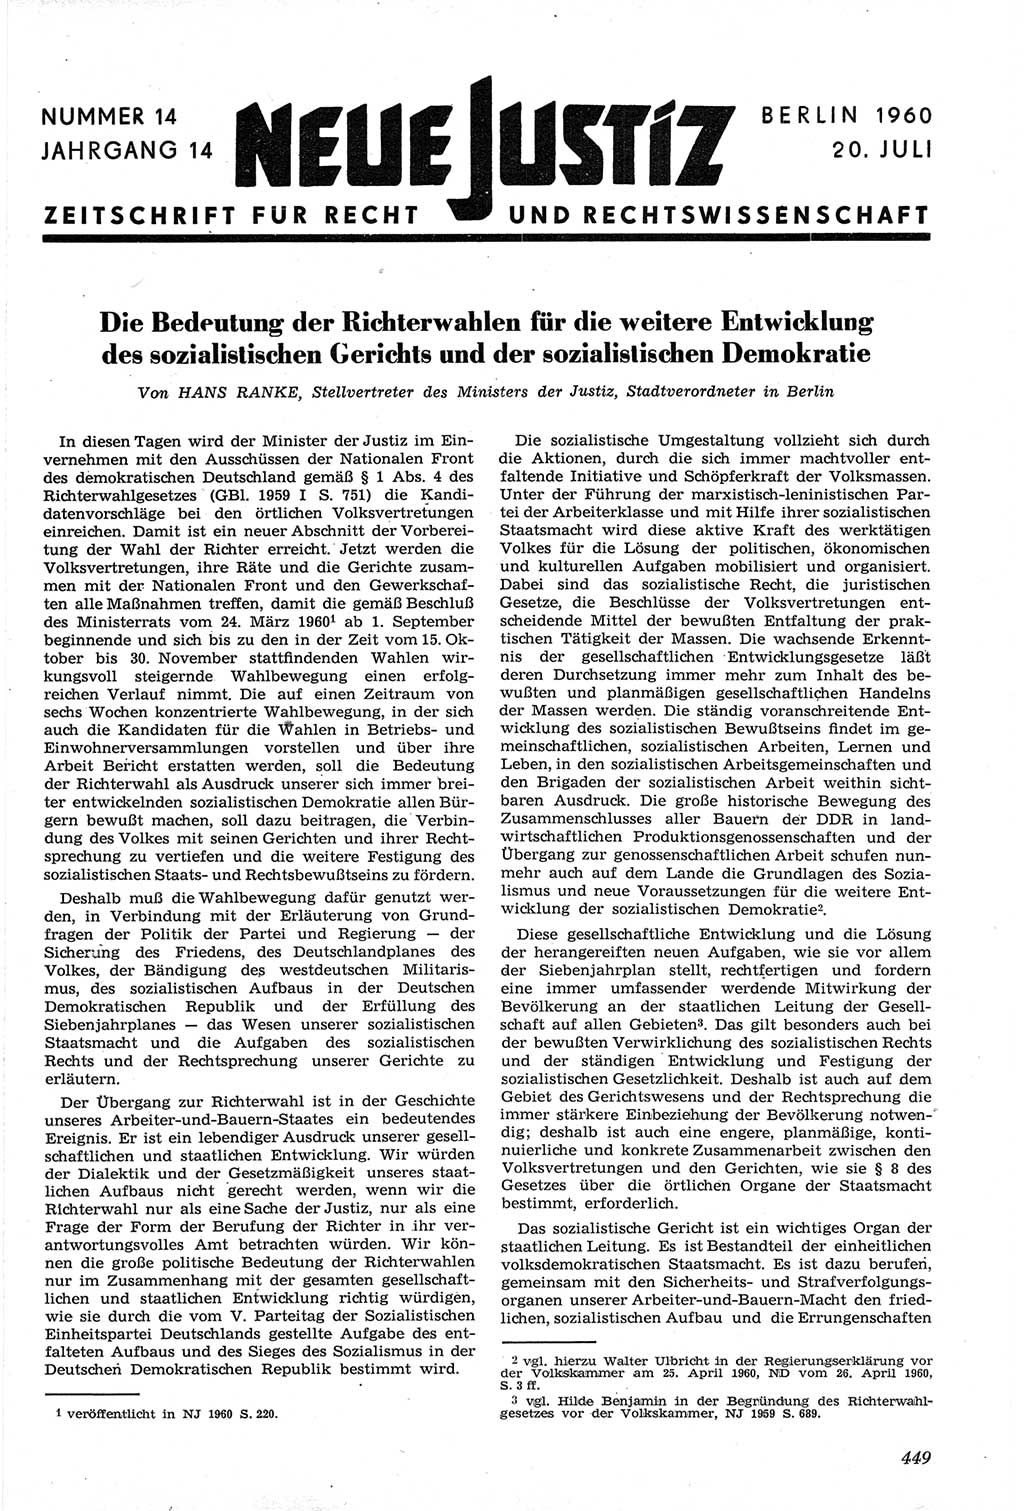 Neue Justiz (NJ), Zeitschrift für Recht und Rechtswissenschaft [Deutsche Demokratische Republik (DDR)], 14. Jahrgang 1960, Seite 449 (NJ DDR 1960, S. 449)